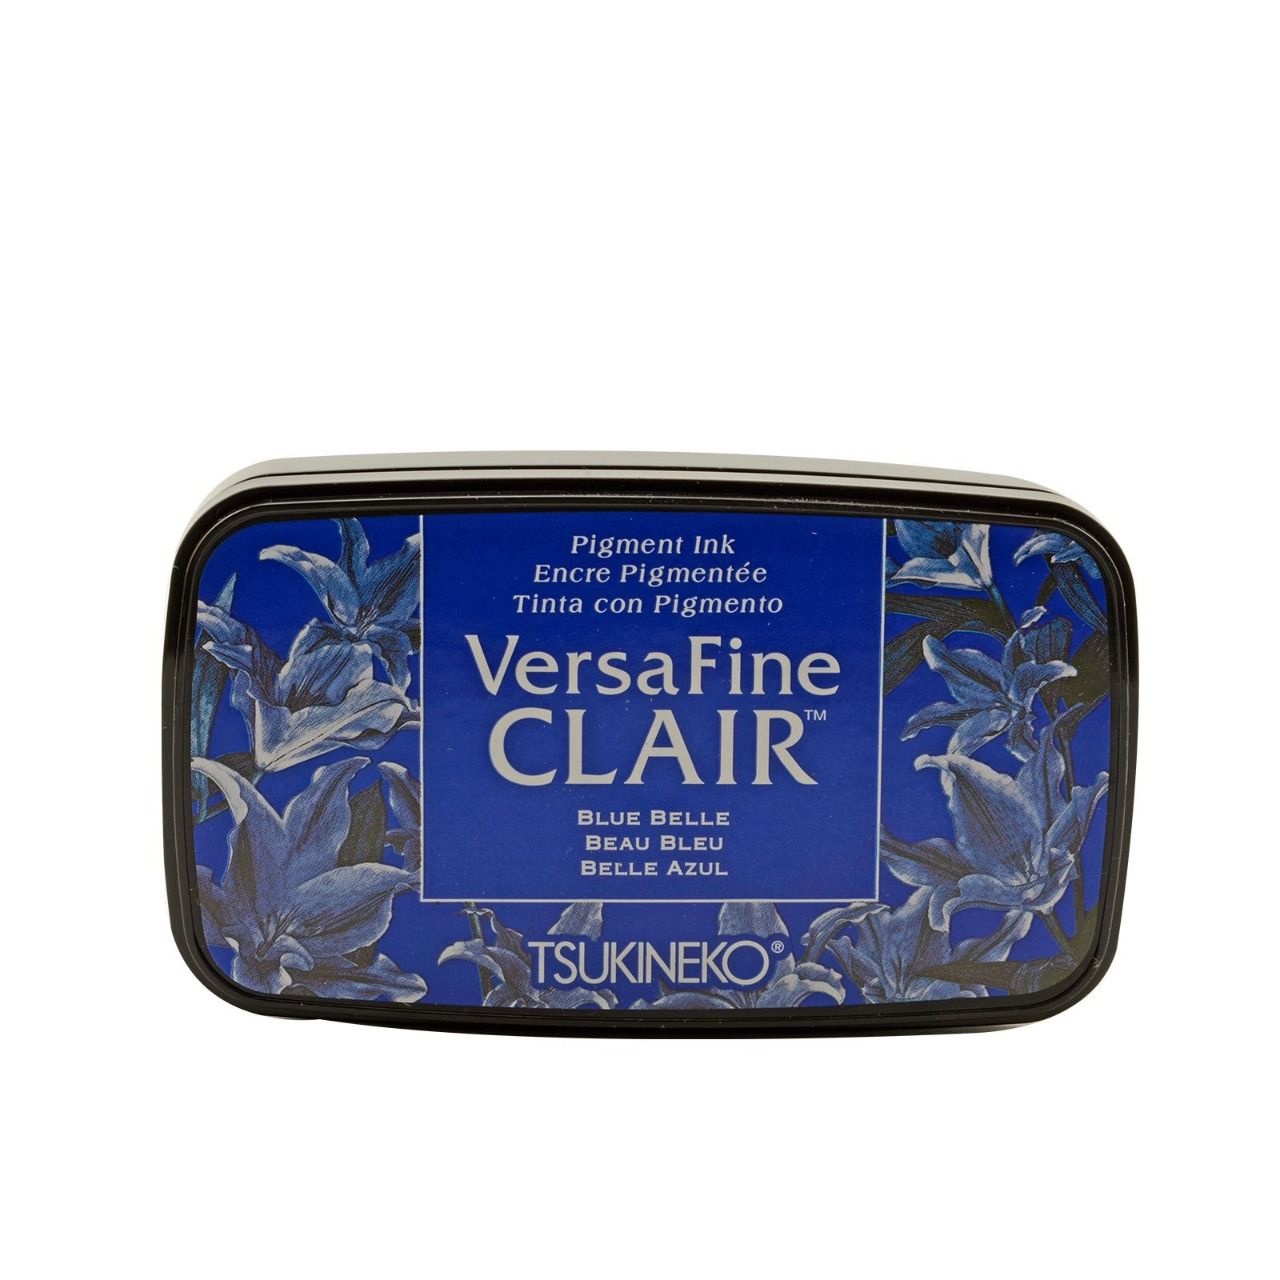 Versafine CLAIR - Beau bleu